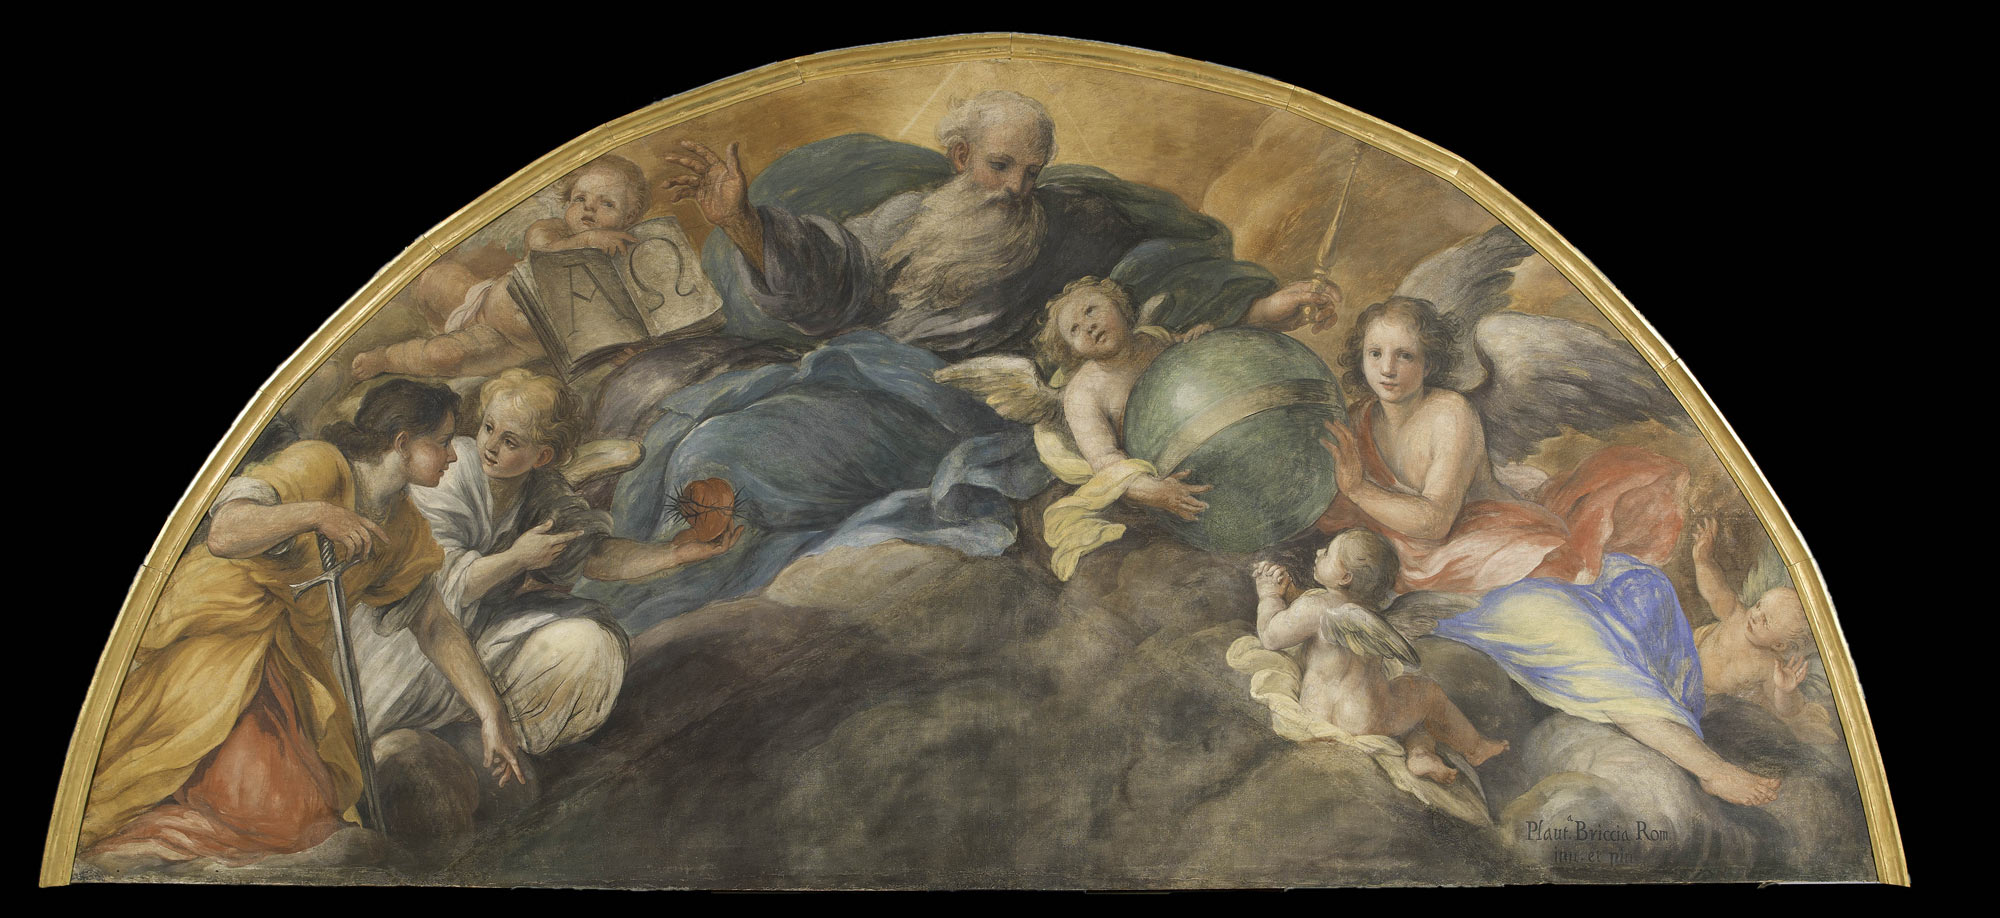 Plautilla Bricci, Un angelo offre il Sacro Cuore di Gesù all’Eterno Padre (1669-1674 circa; tempera su tela, 166 x 364 cm; Città del Vaticano, Musei Vaticani) 